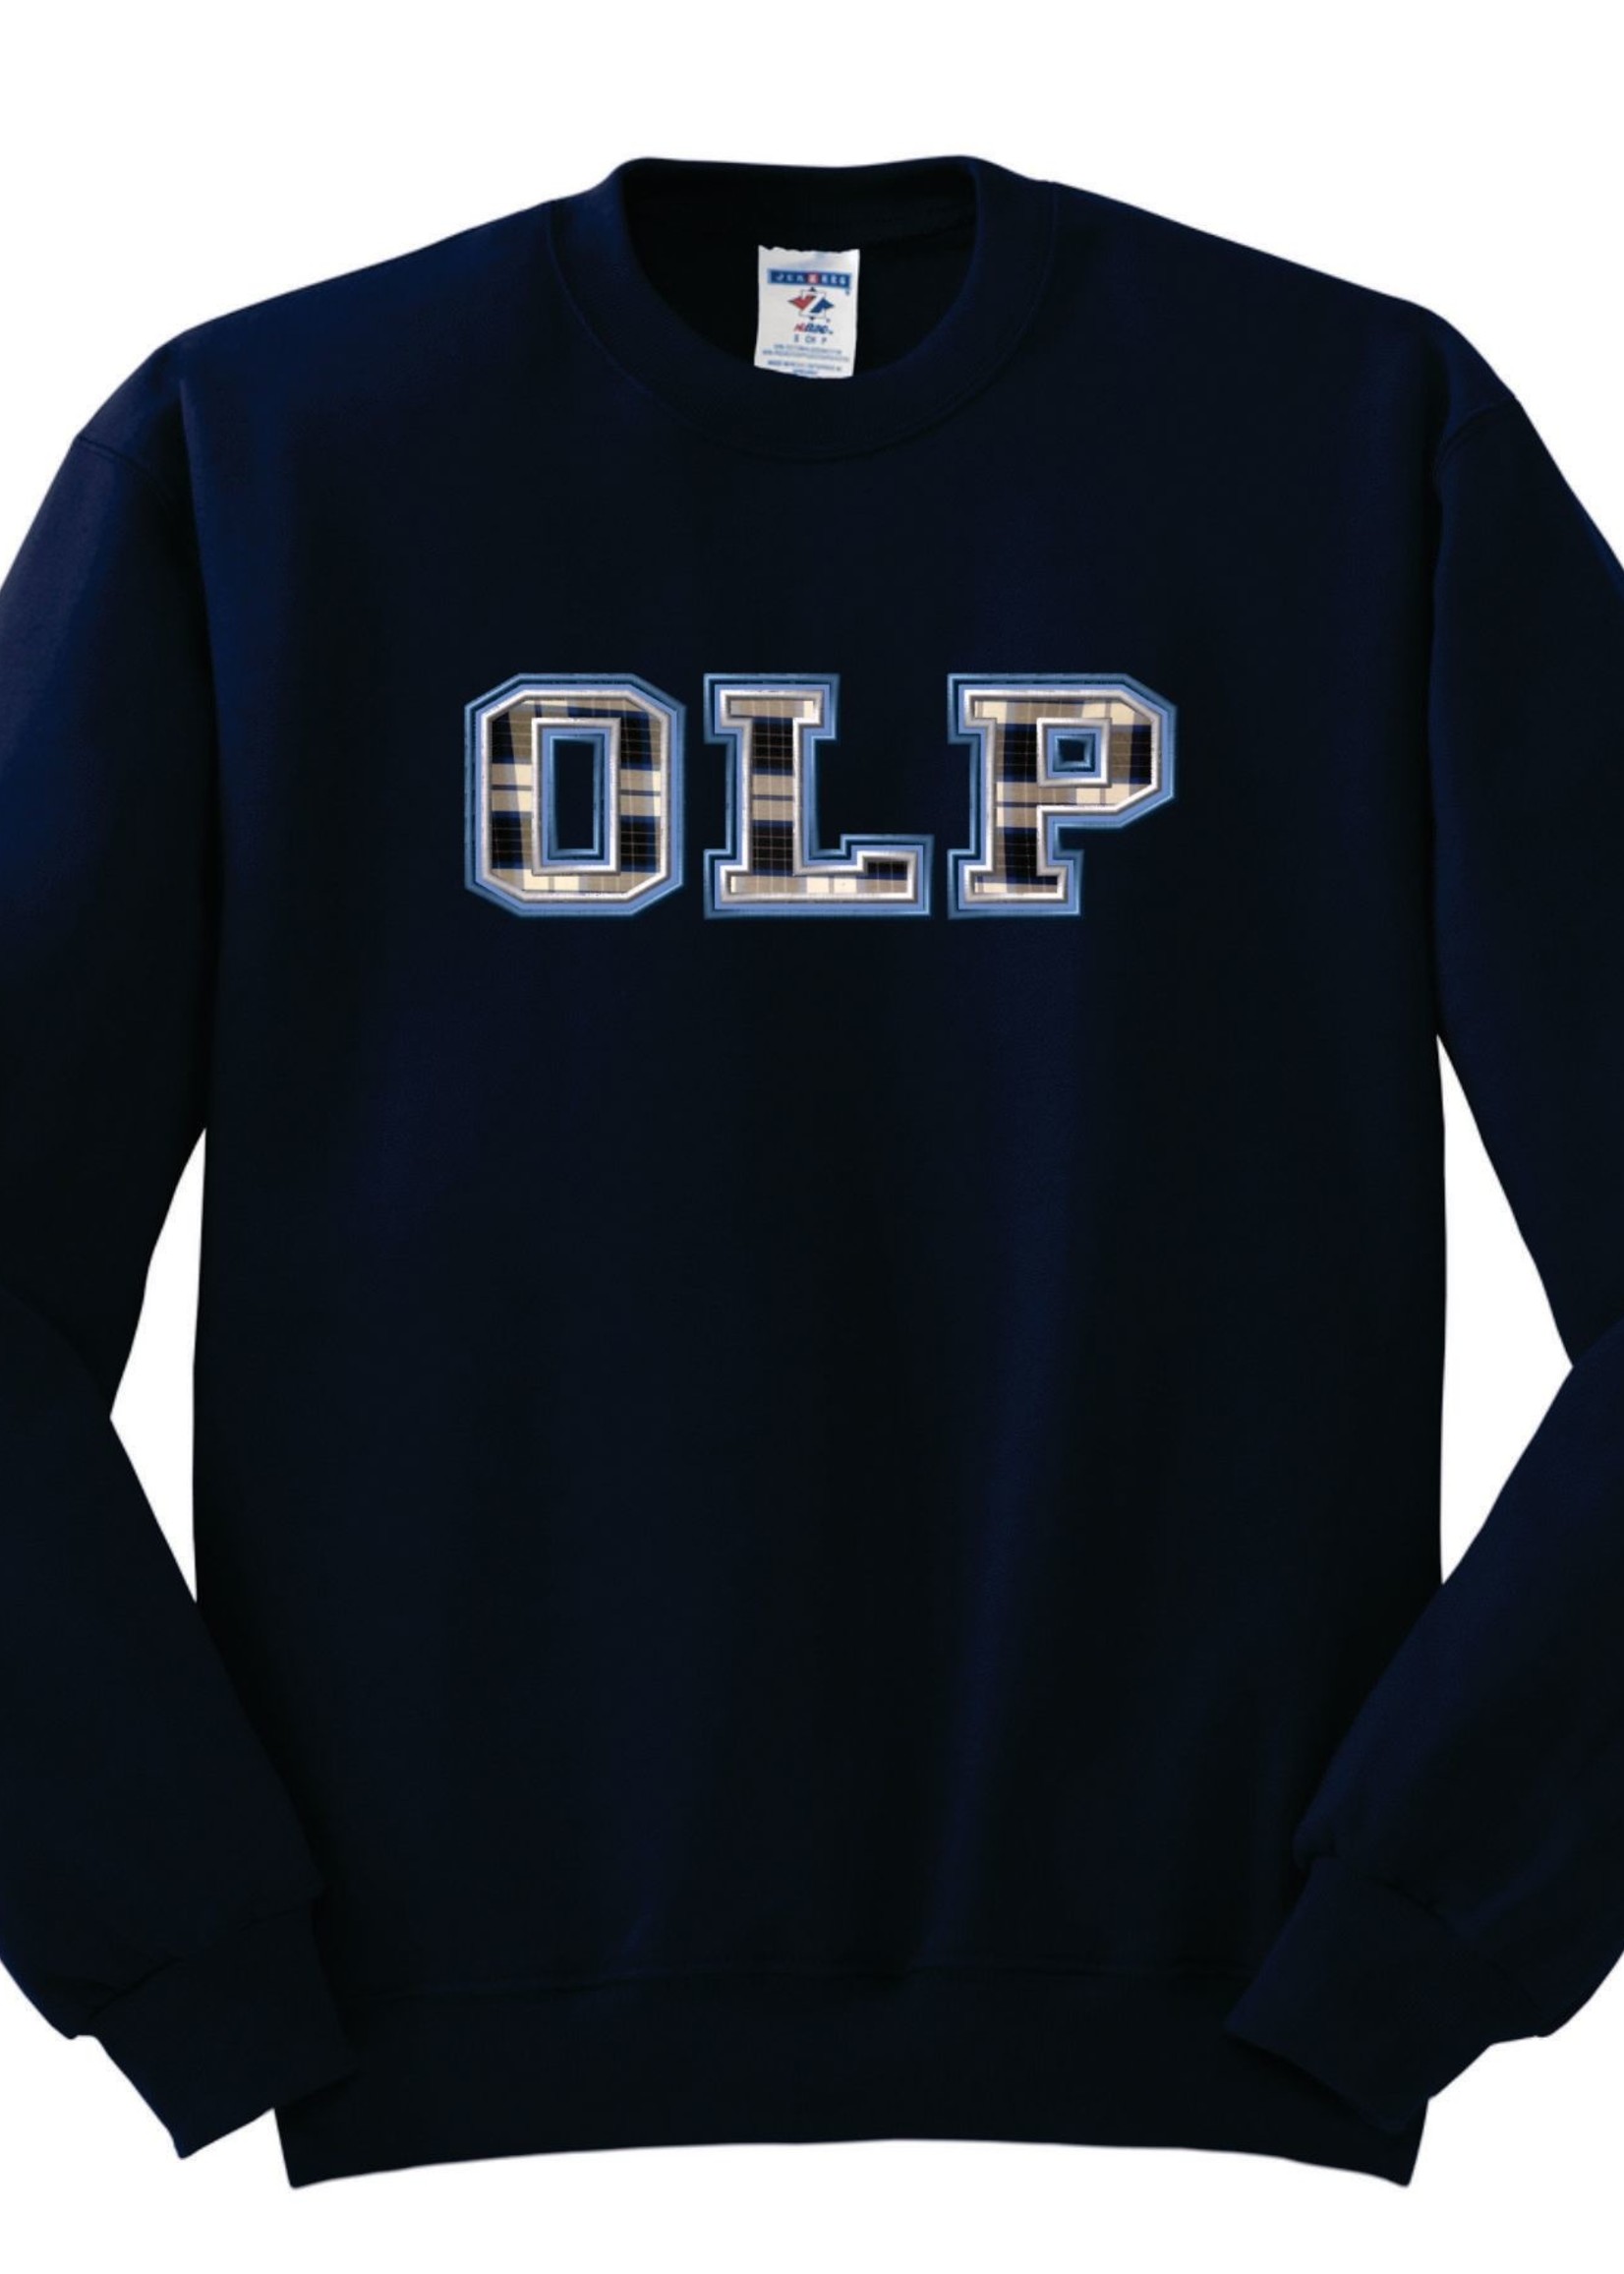 OLP Crewneck Sweatshirt with Applique